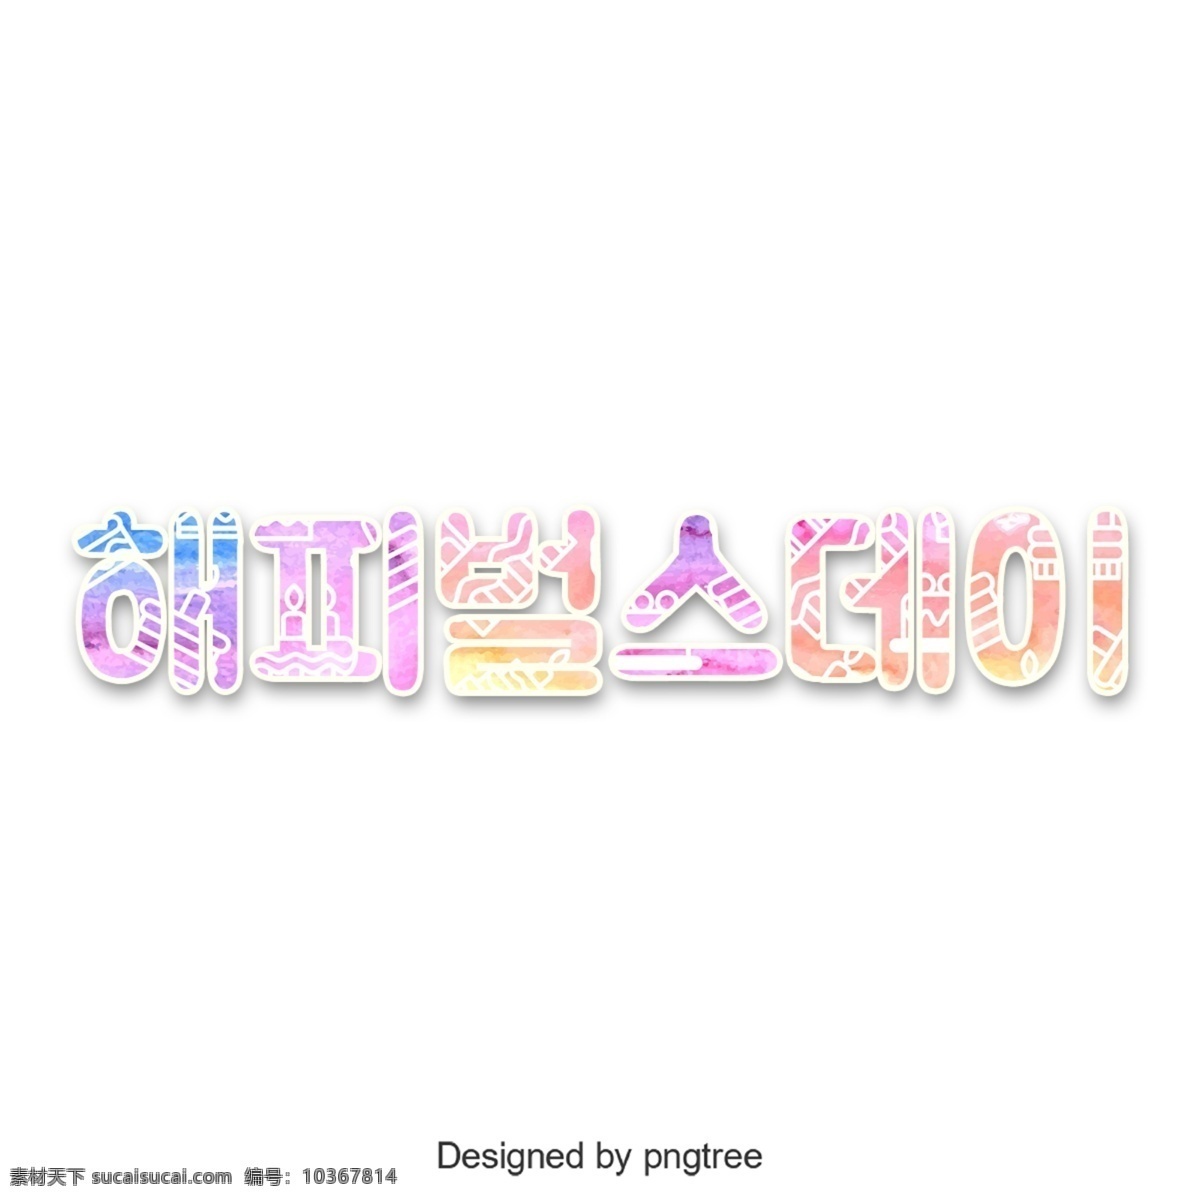 很 高兴 能够 制作 韩国 字体 韩文 字形 可爱 避免惩罚 芝士蛋糕